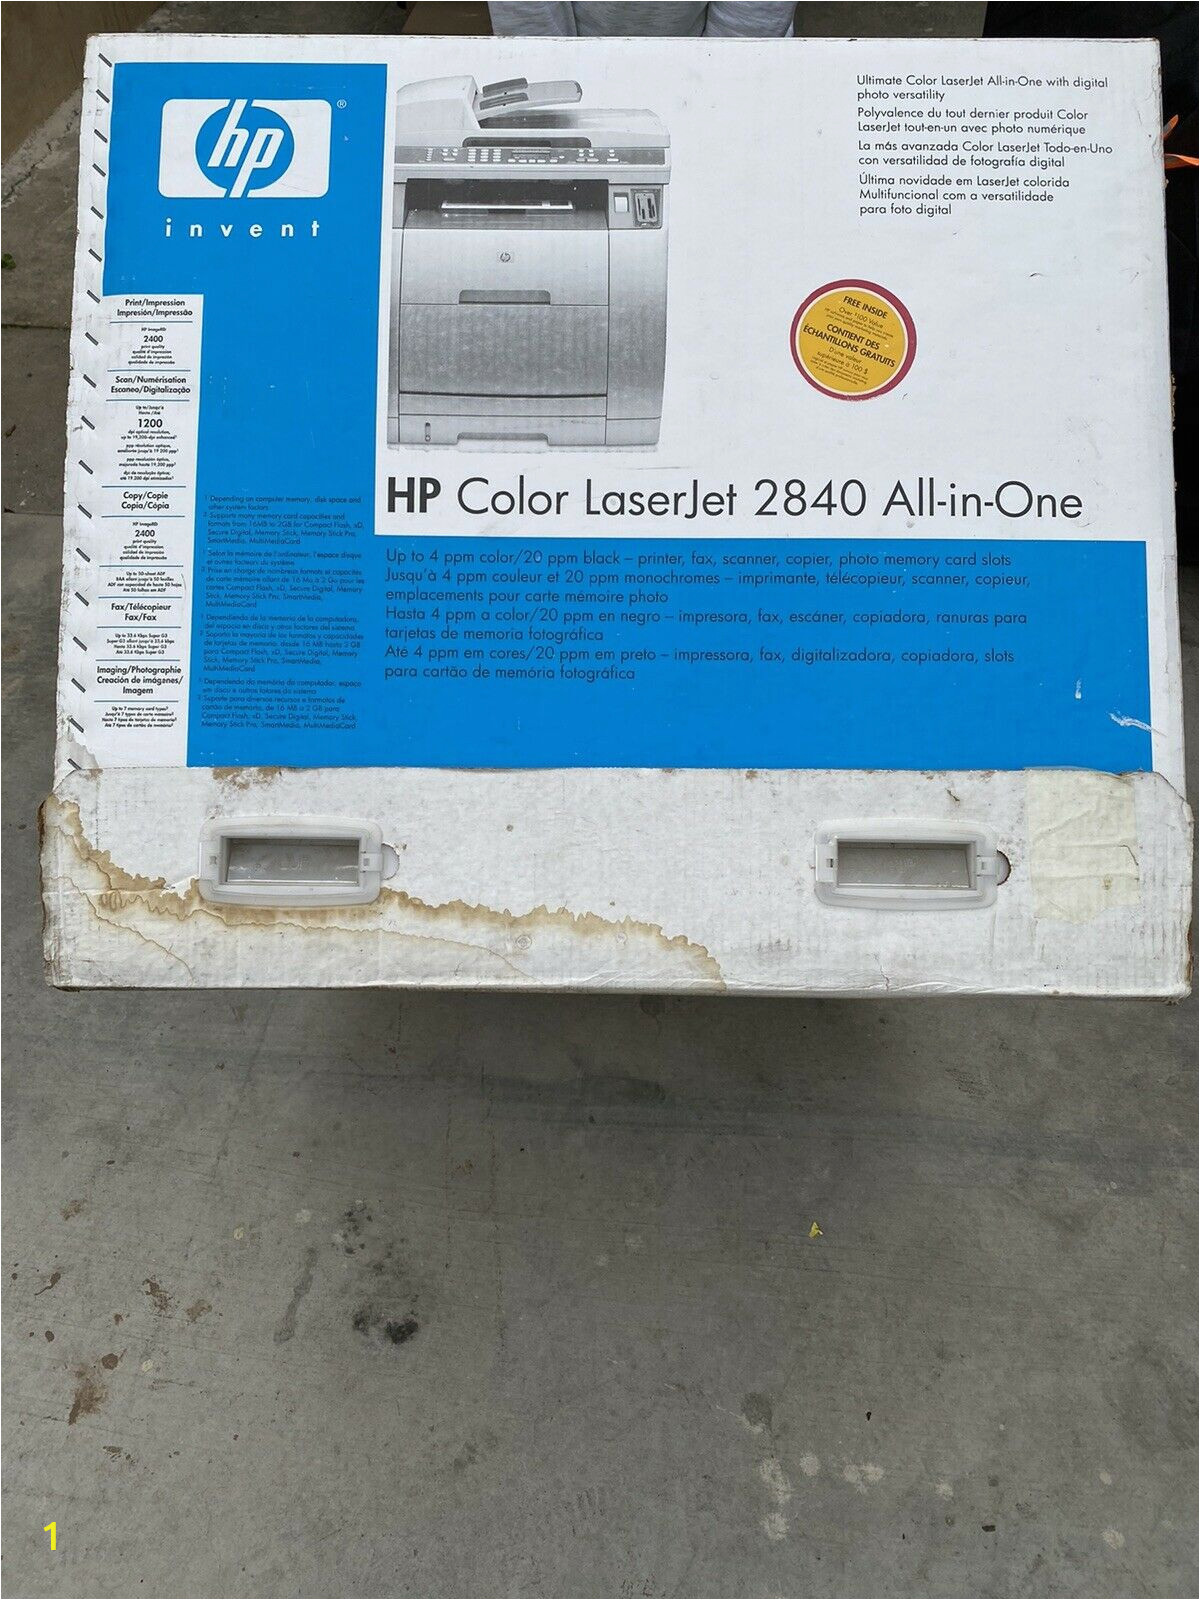 Hp Color Laserjet 2840 Page too Complex Hp Laserjet 2840 All In E Laser Printer